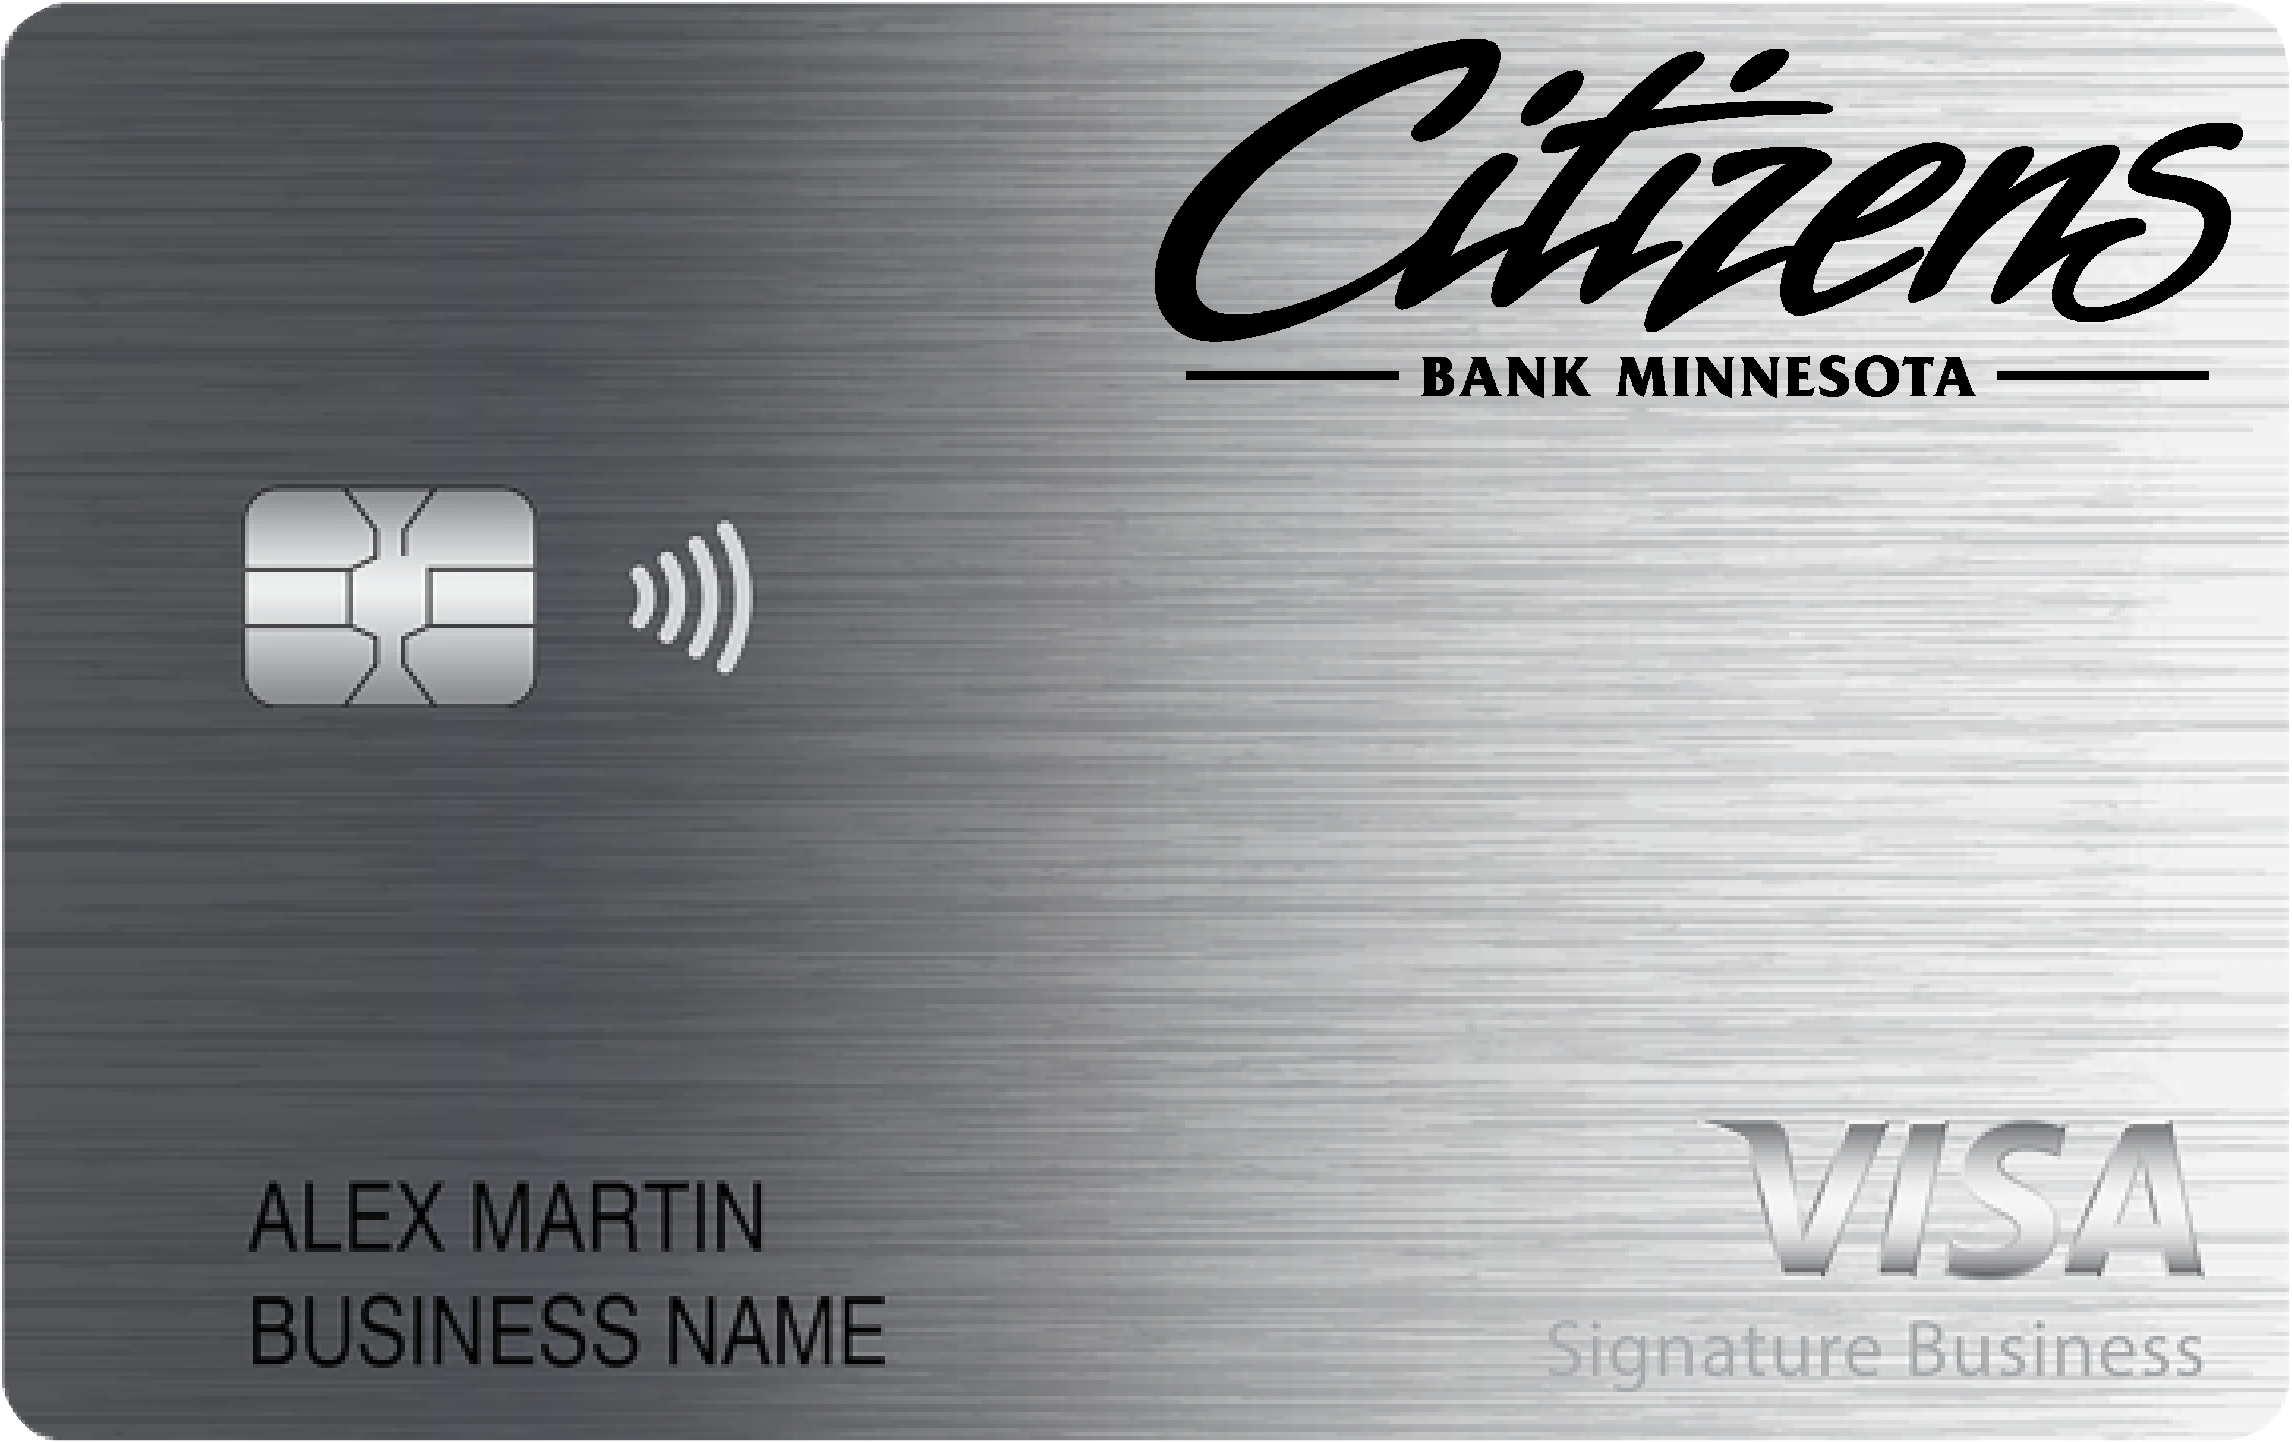 Citizens Bank Minnesota Smart Business Rewards Card